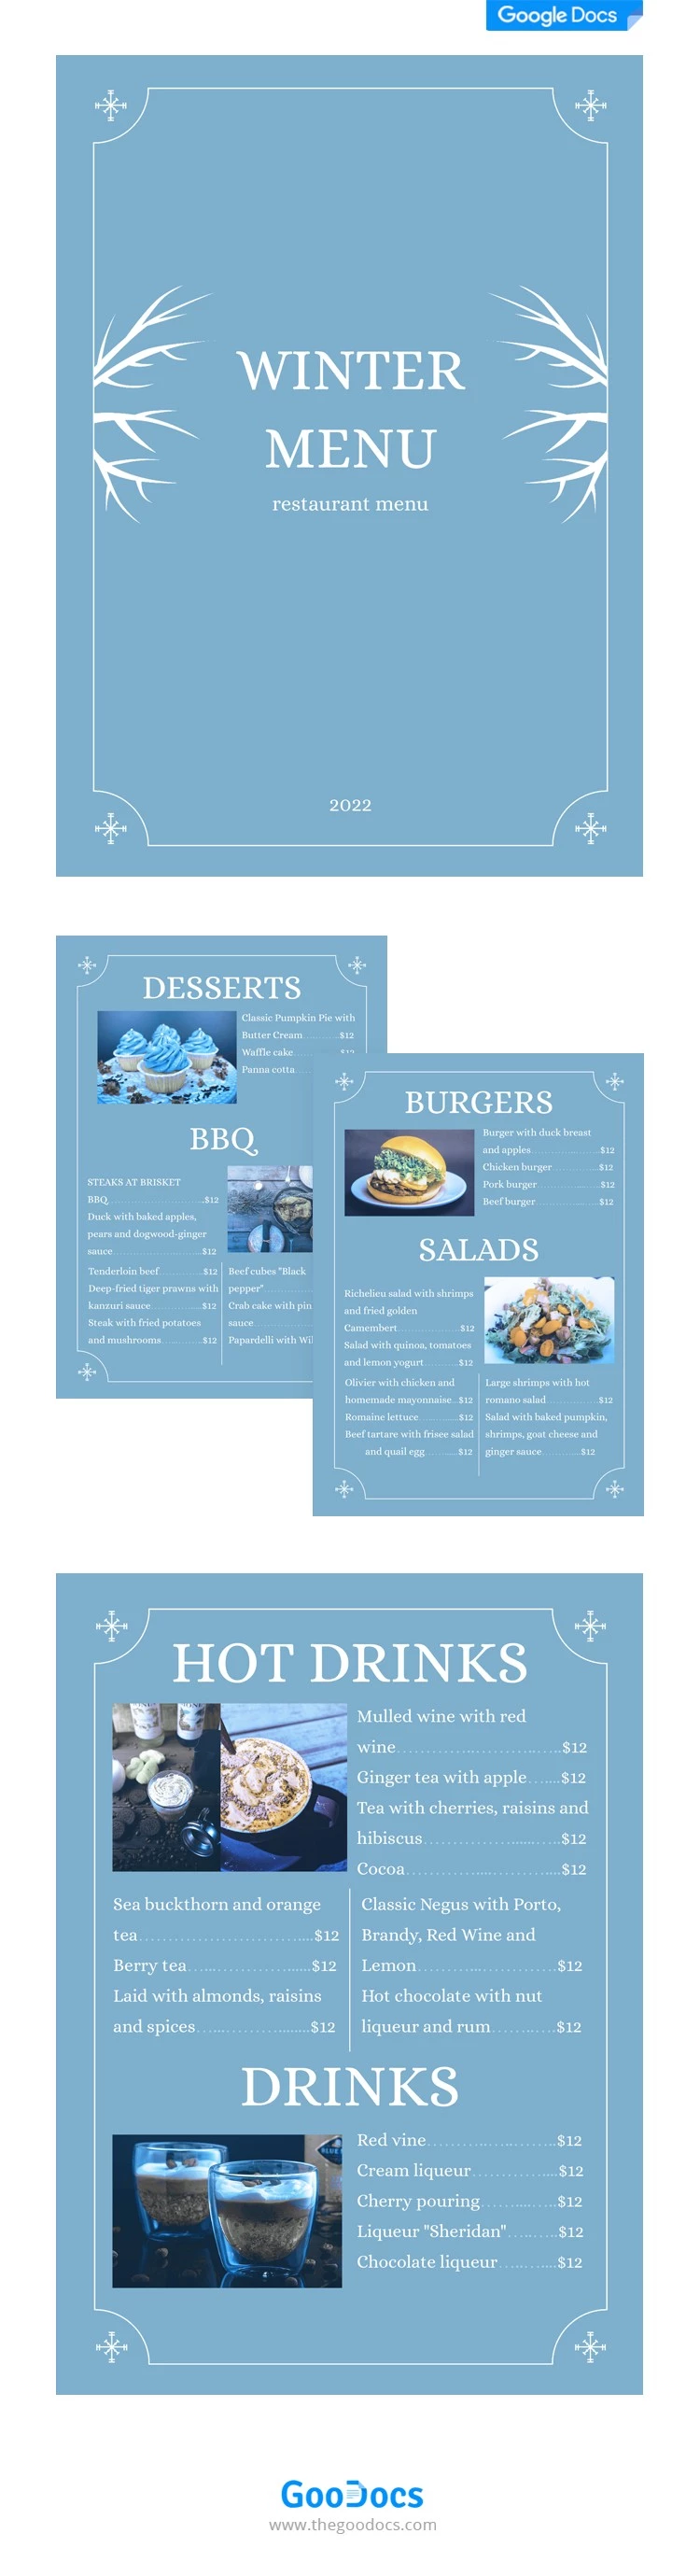 Menu d'hiver de restaurant - free Google Docs Template - 10062074